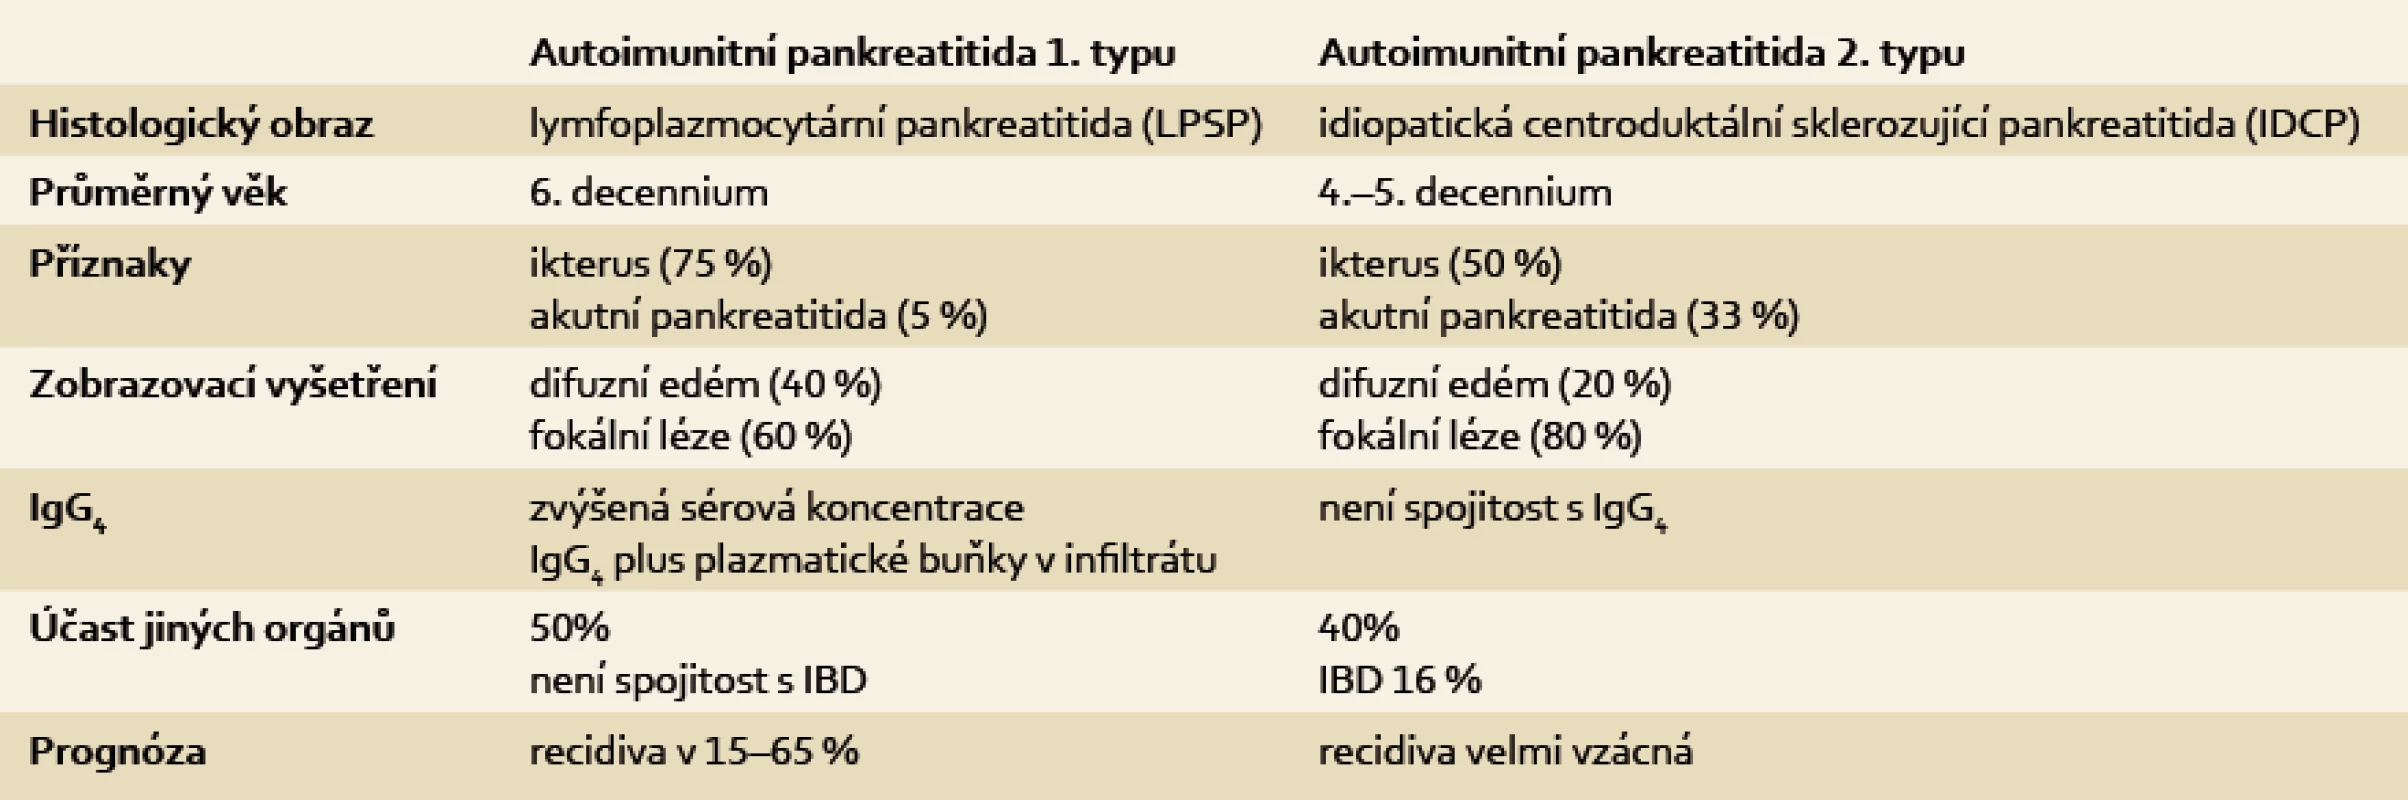 Přehled klinických charakteristik autoimunitní pankreatitidy 1. a 2. typu.
Tab. 1. Overview of the clinical characteristics of autoimmune pancreatitis type 1 and 2.